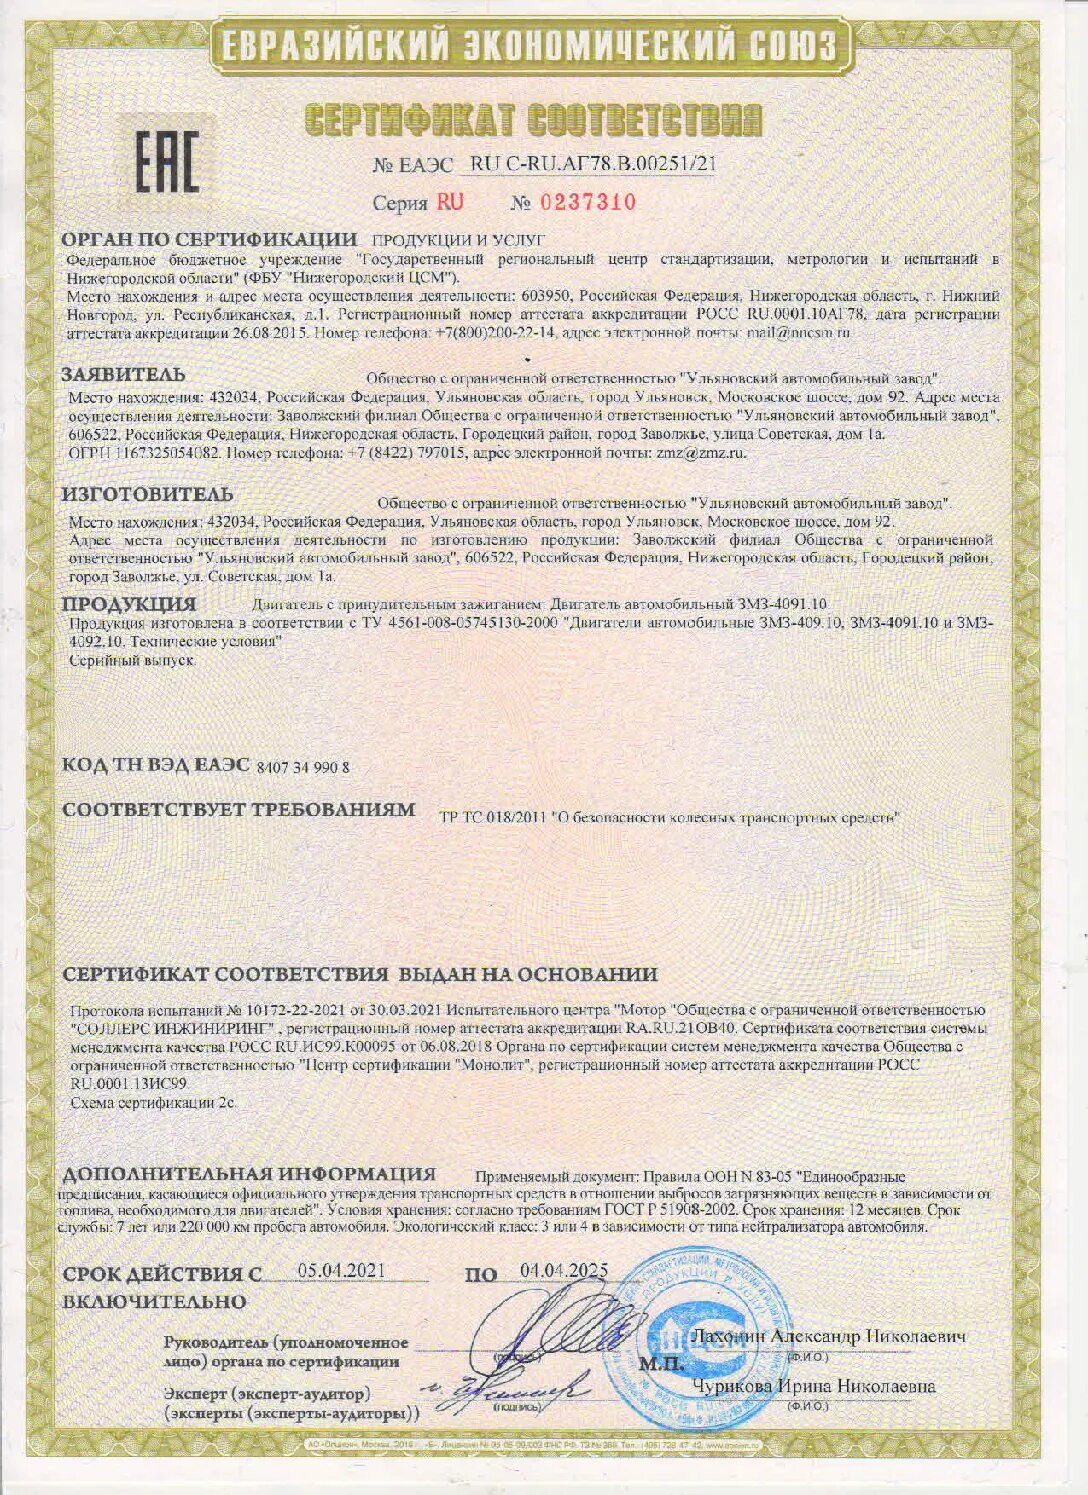 30 c ru. Счетчик Меркурий 230 сертификат ам-01. Сертификат на счетчик Меркурий 230 ам-01 трёхфазный. Сертификат на счетчик Меркурий 230.